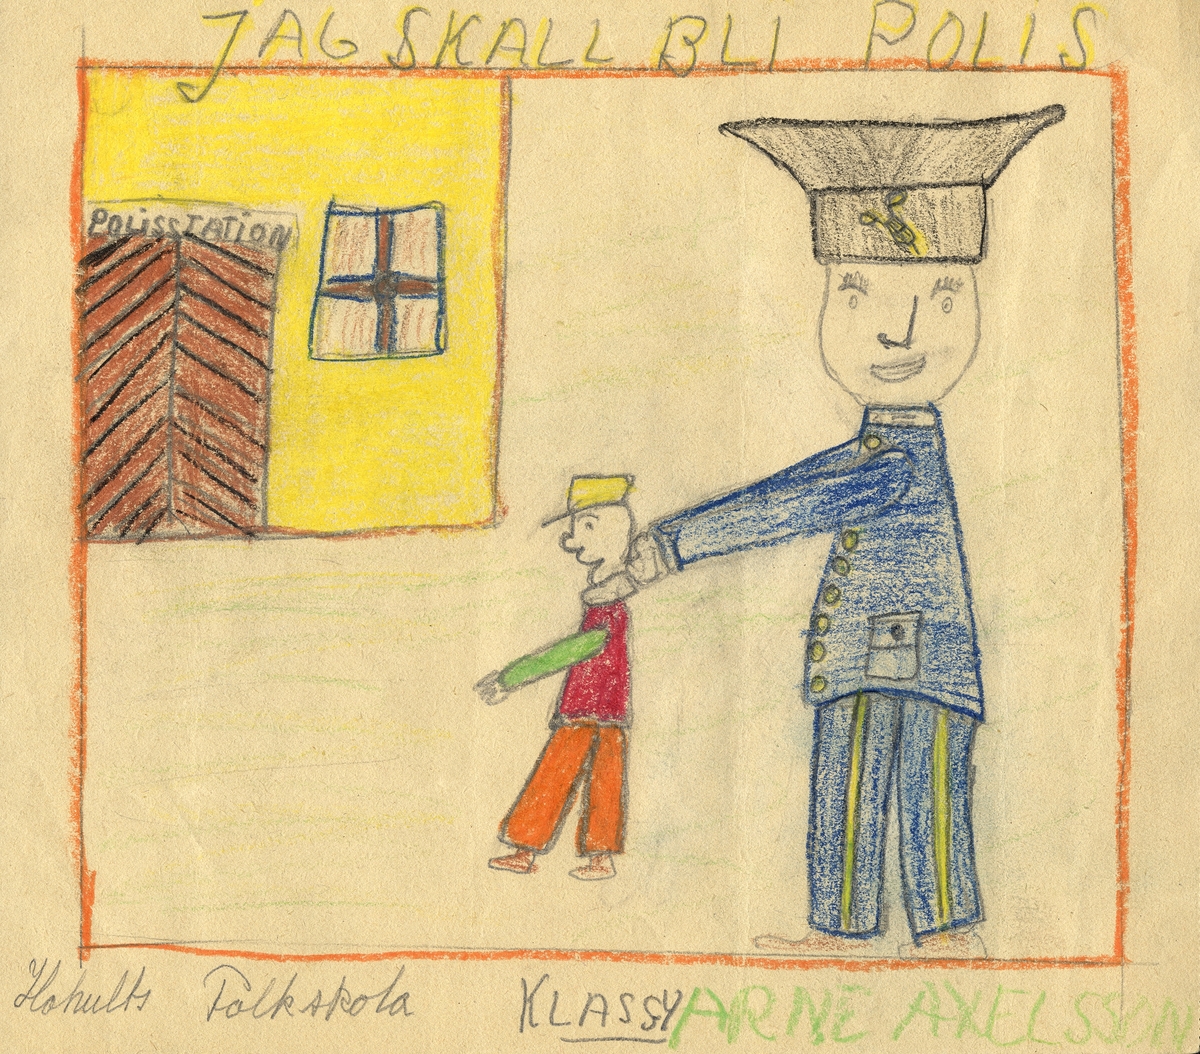 Barnteckning - akvarell.
"Vad jag skall bli när jag blir stor", 1947. 
Jag skall bli polis. 

Arne Axelsson, Hohults skola, klass IV. 

Inskrivet i huvudbok 1947.